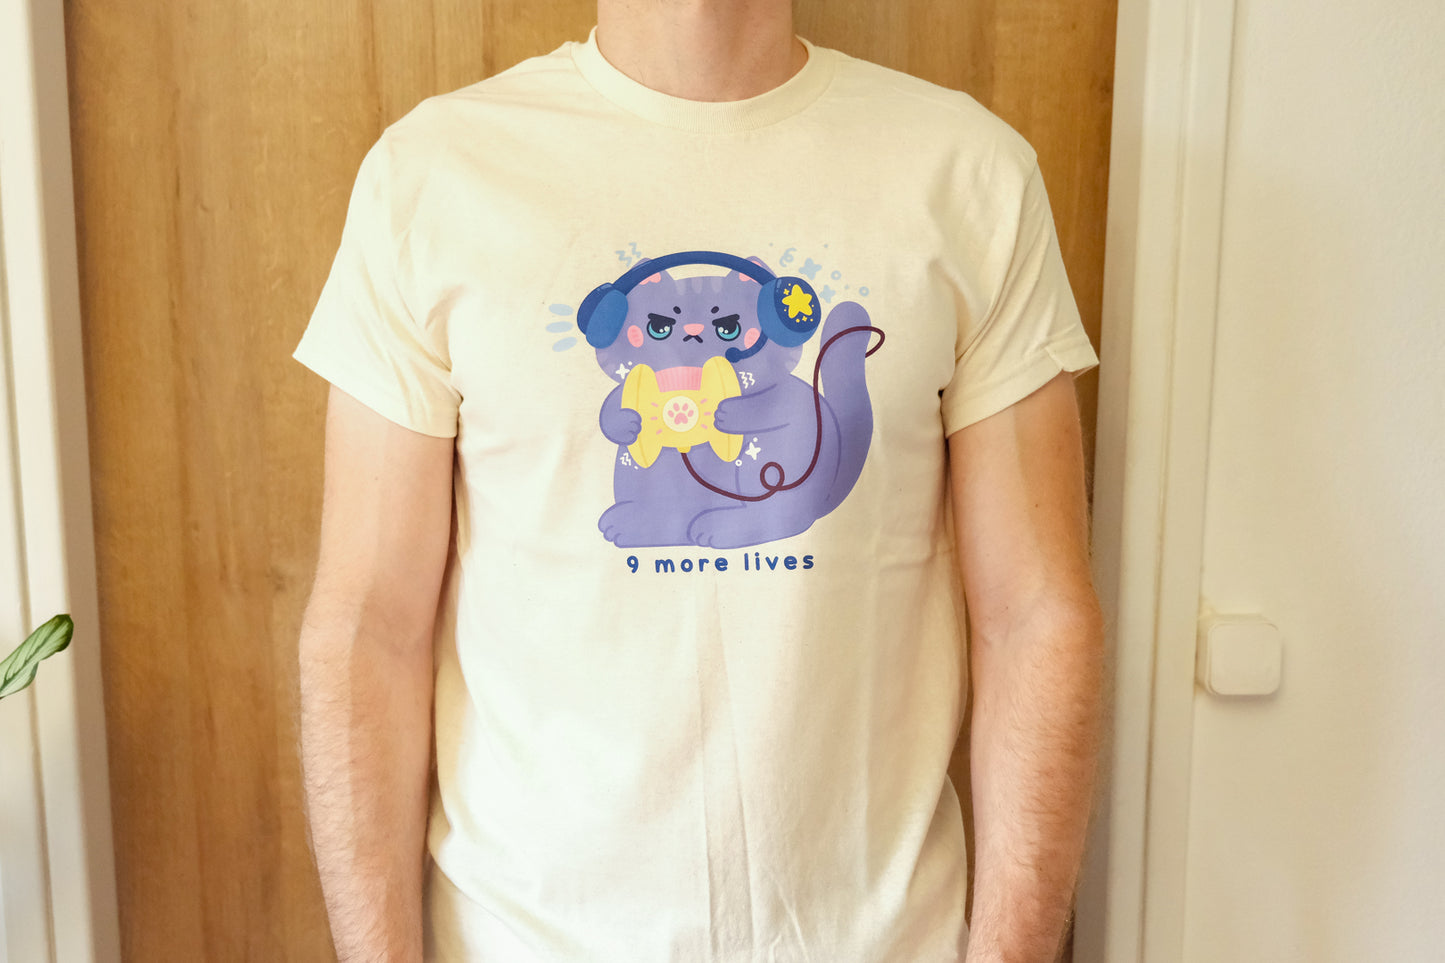 Kawaii Gamer Cat T-Shirt "9 More Lives"